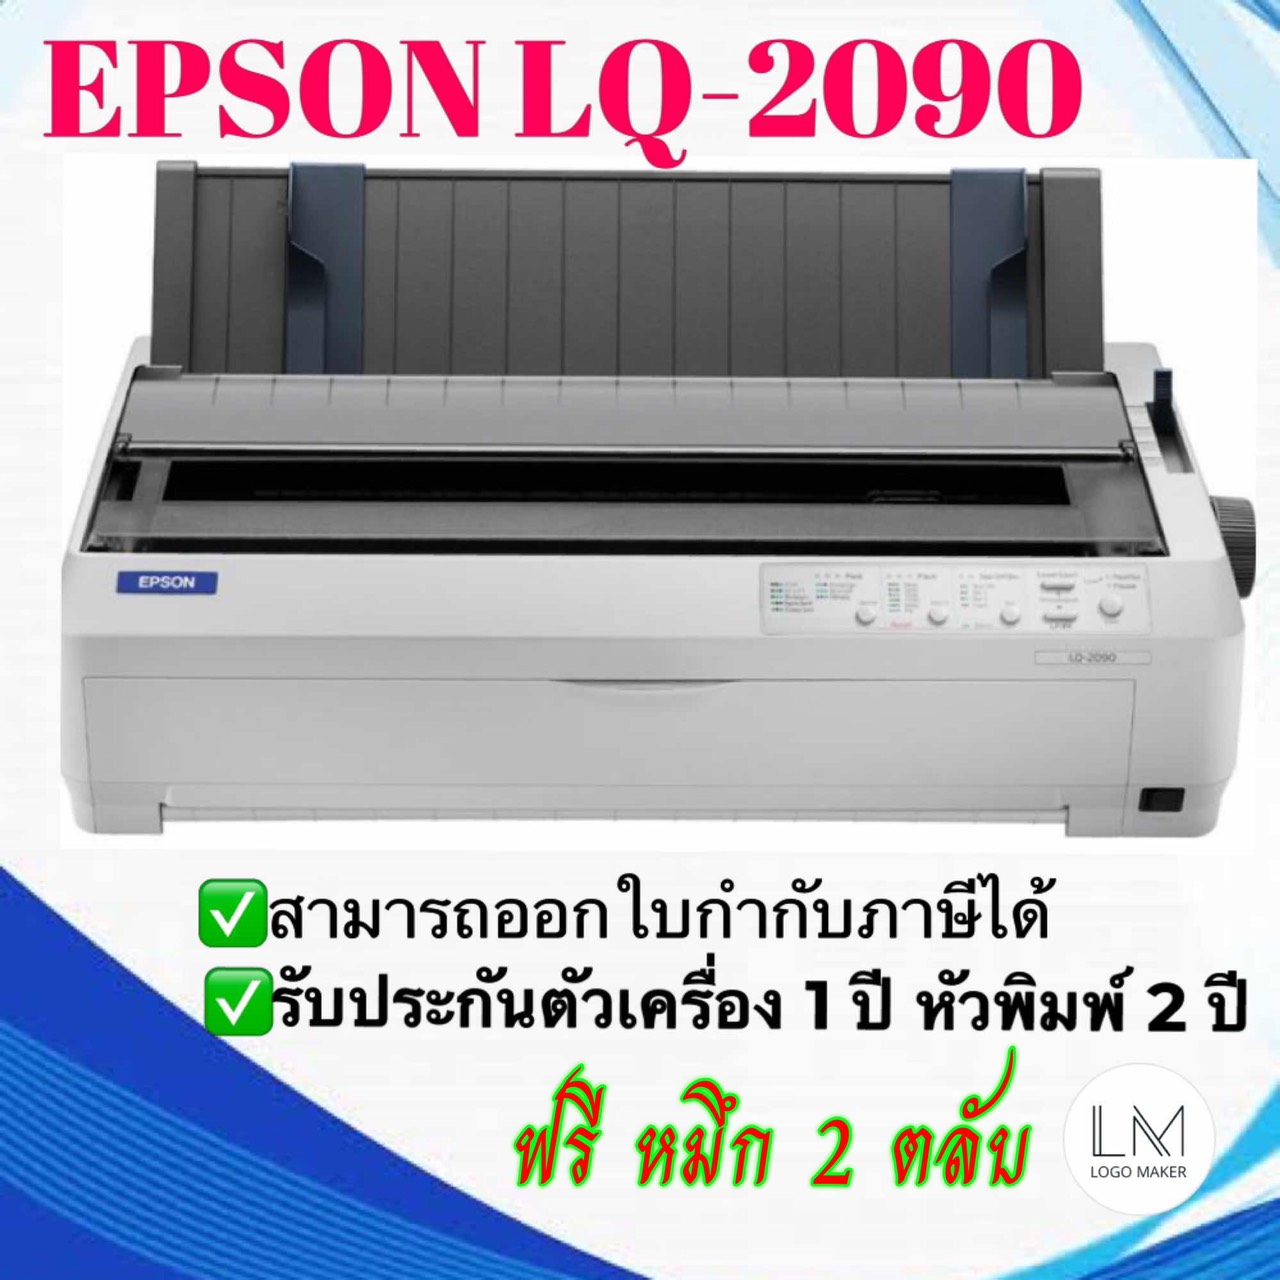 EPSON Dot Matrix Printer LQ-2090